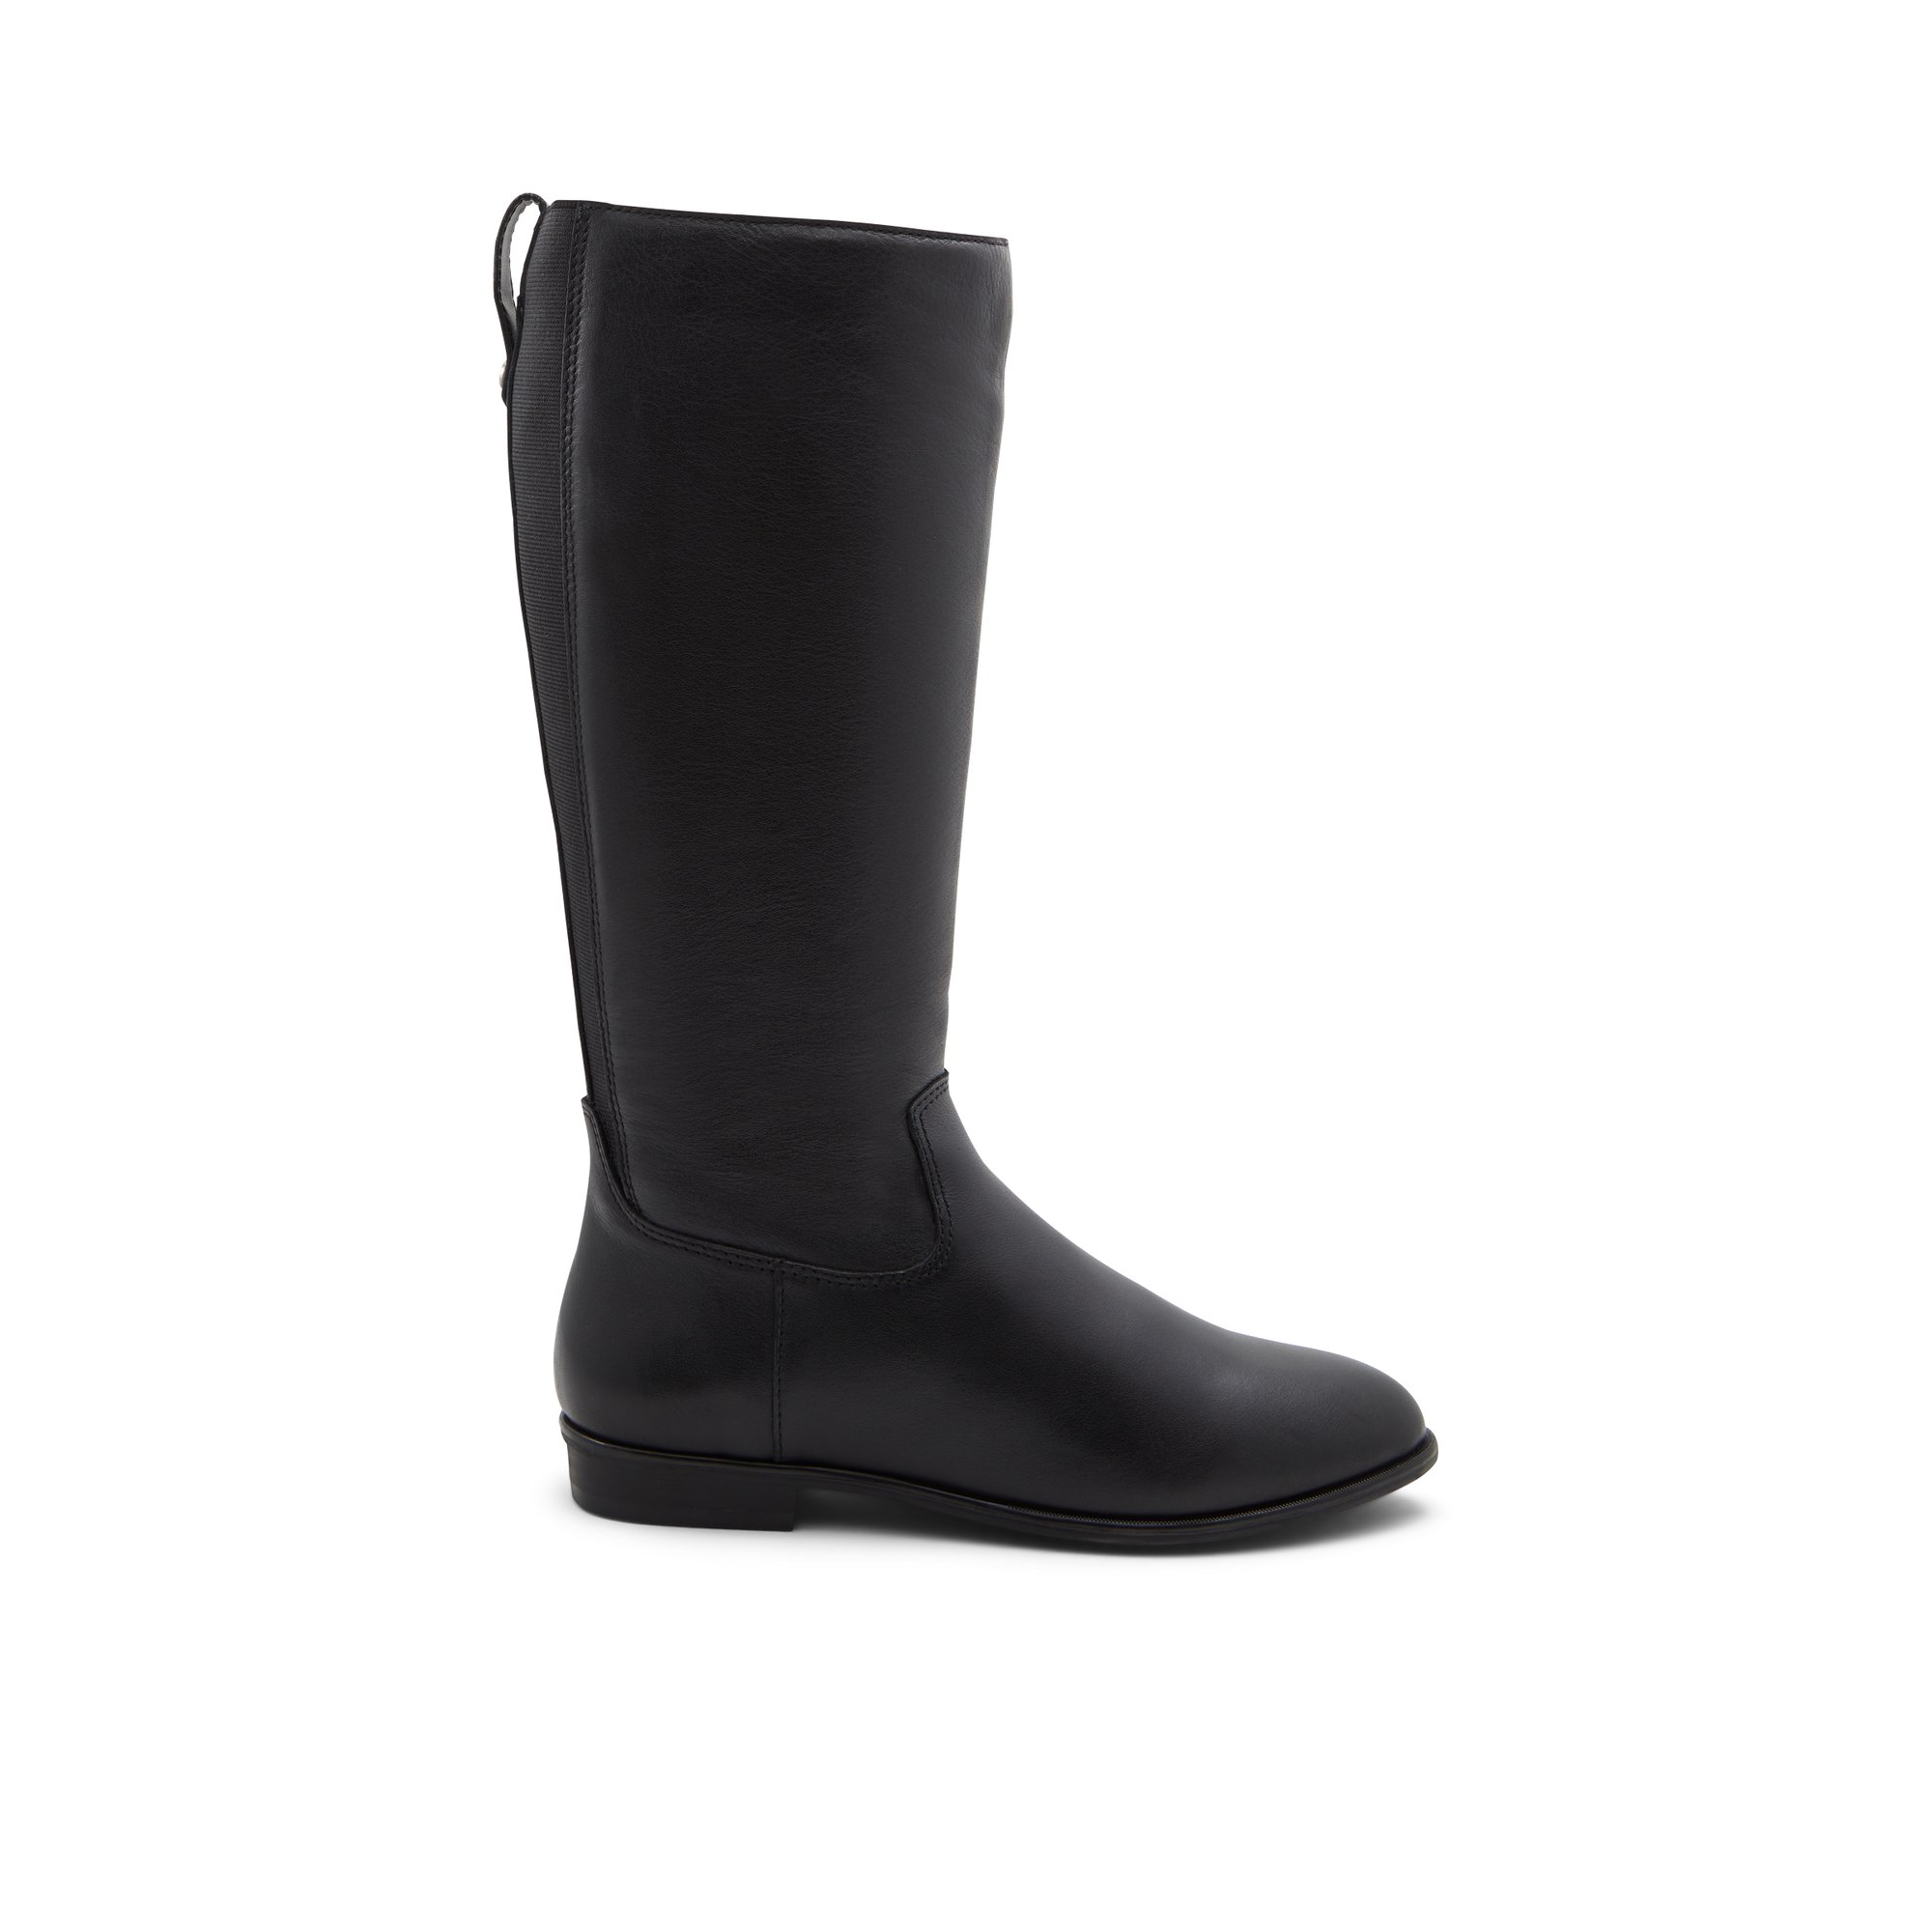 ALDO Riraven - Women's Boots Casual - Black